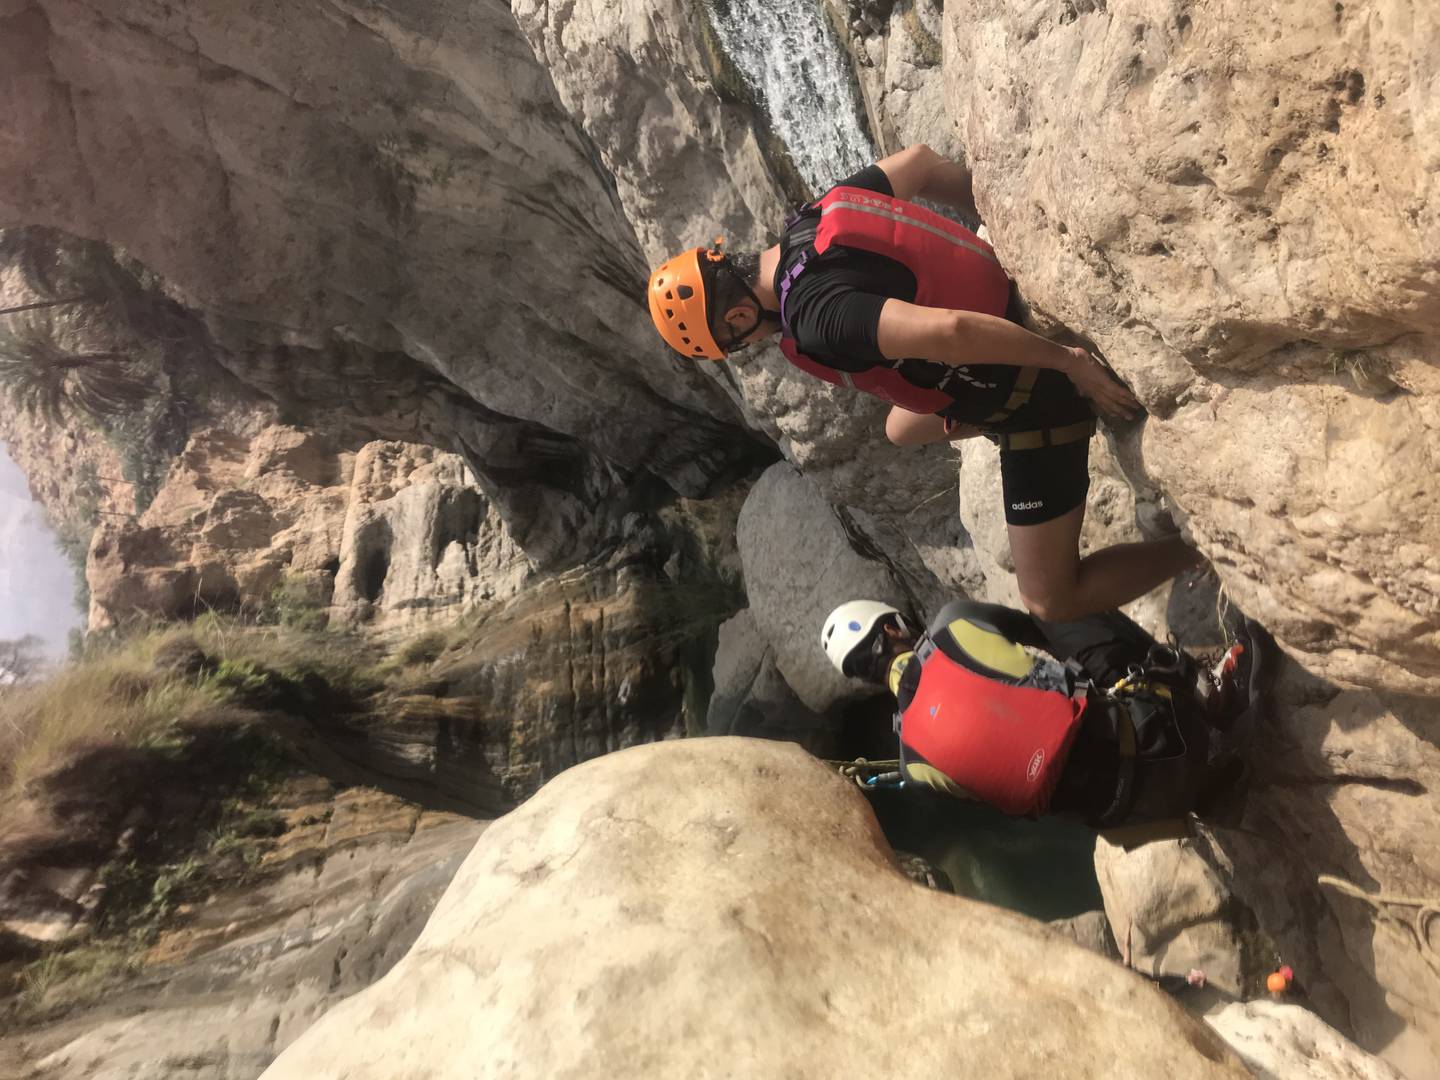 Adventuring in Wadi Shab involves climbing, swimming and scrambling. Photo: H Skirka